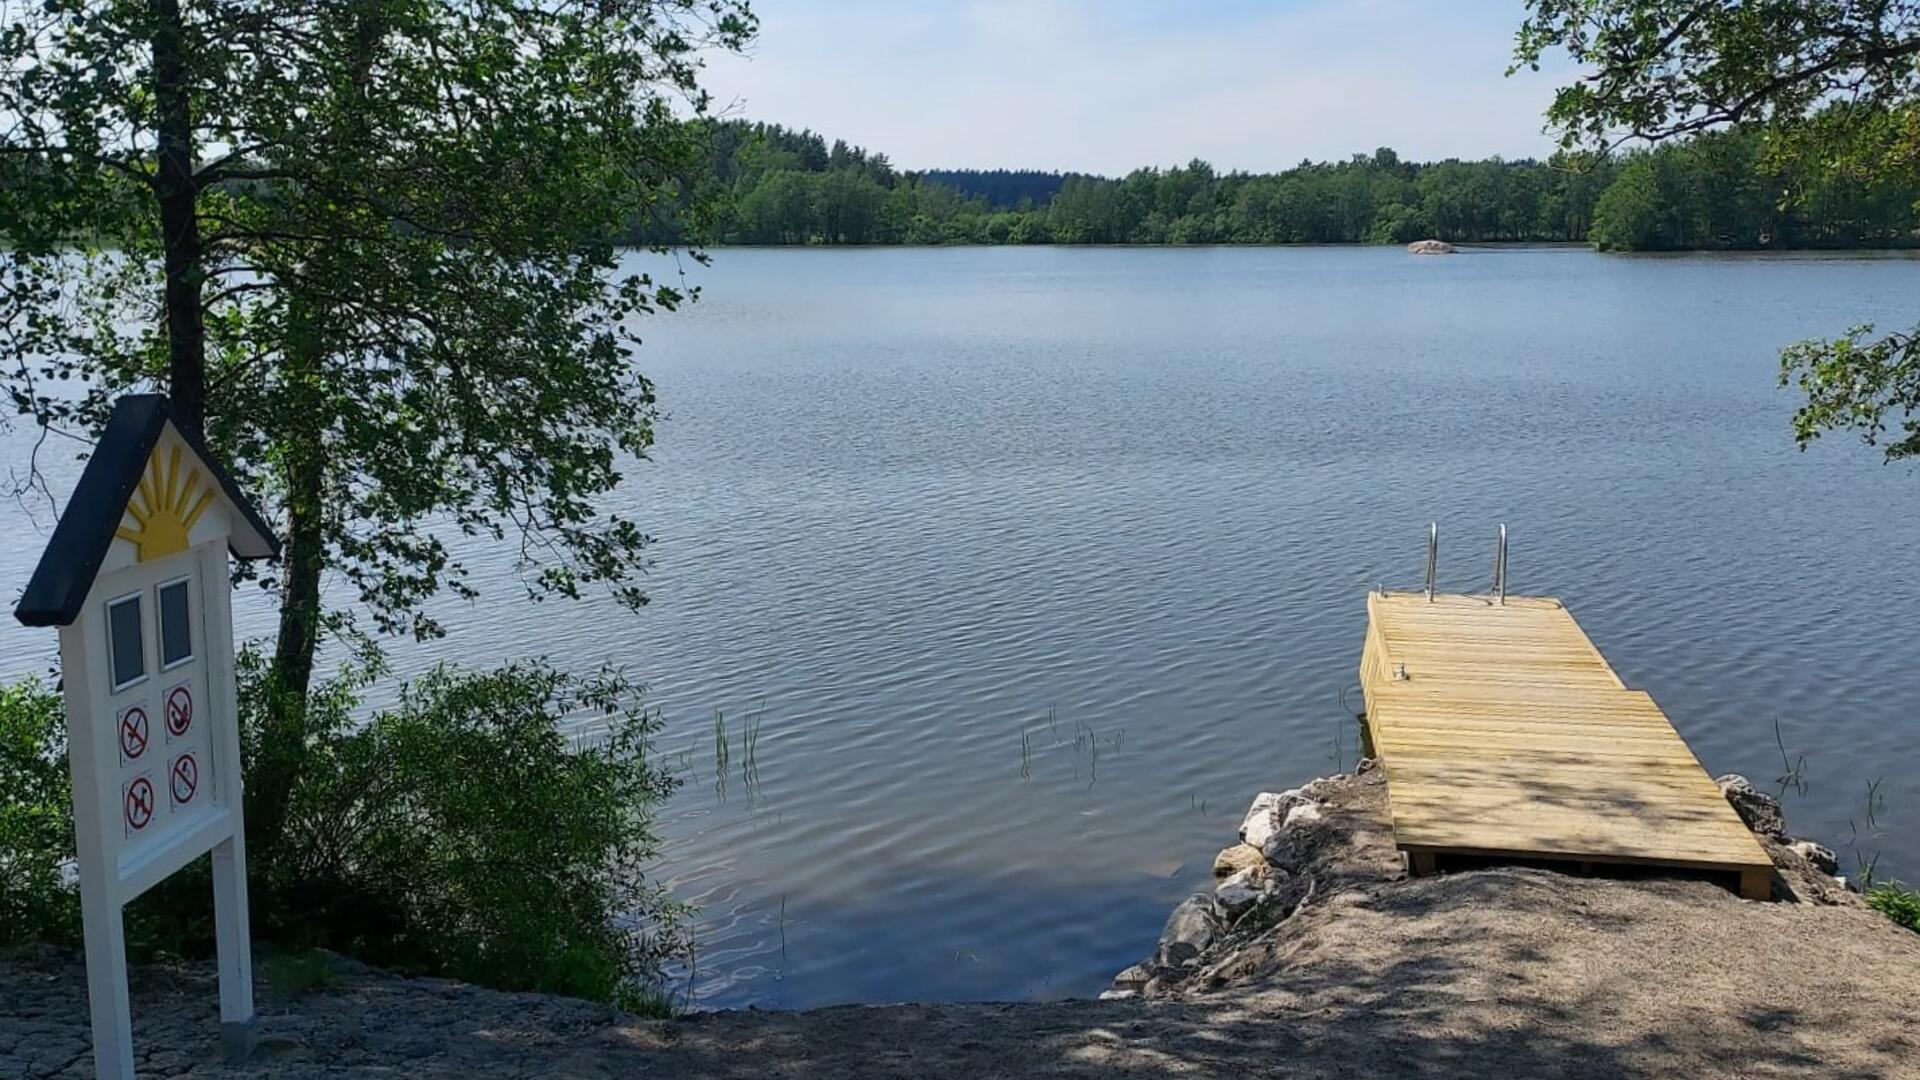 Laituri järven rannalla, vasemmalla kyltti uimapaikasta.